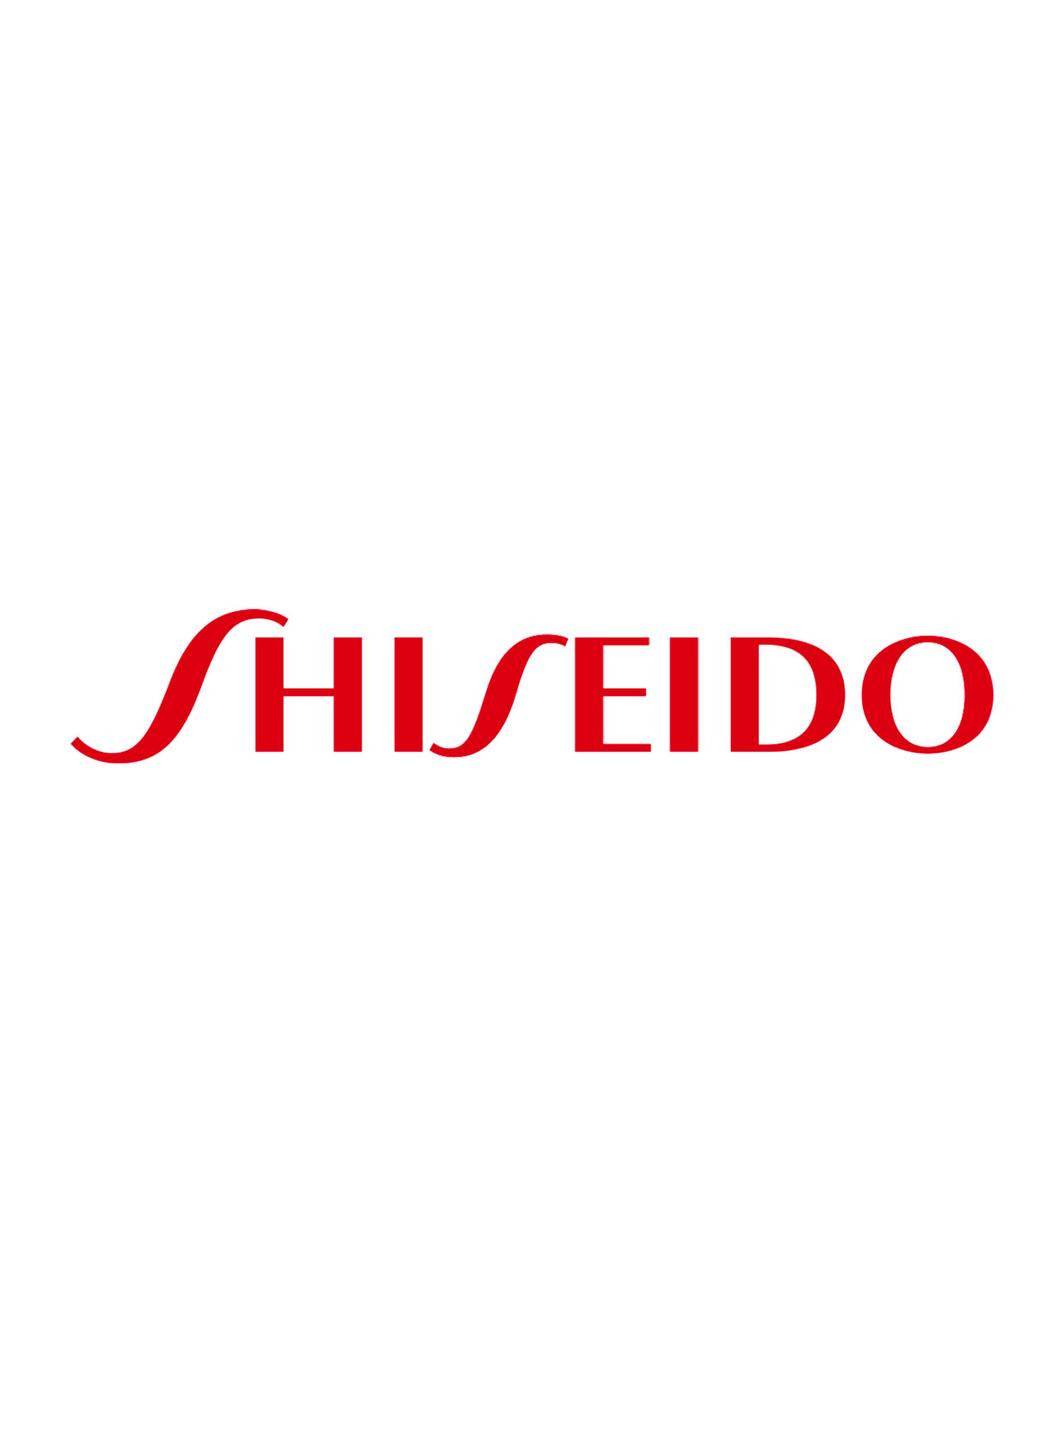 Shiseido noue un partenariat avec la société de biotechnologie CHITOSE Group.